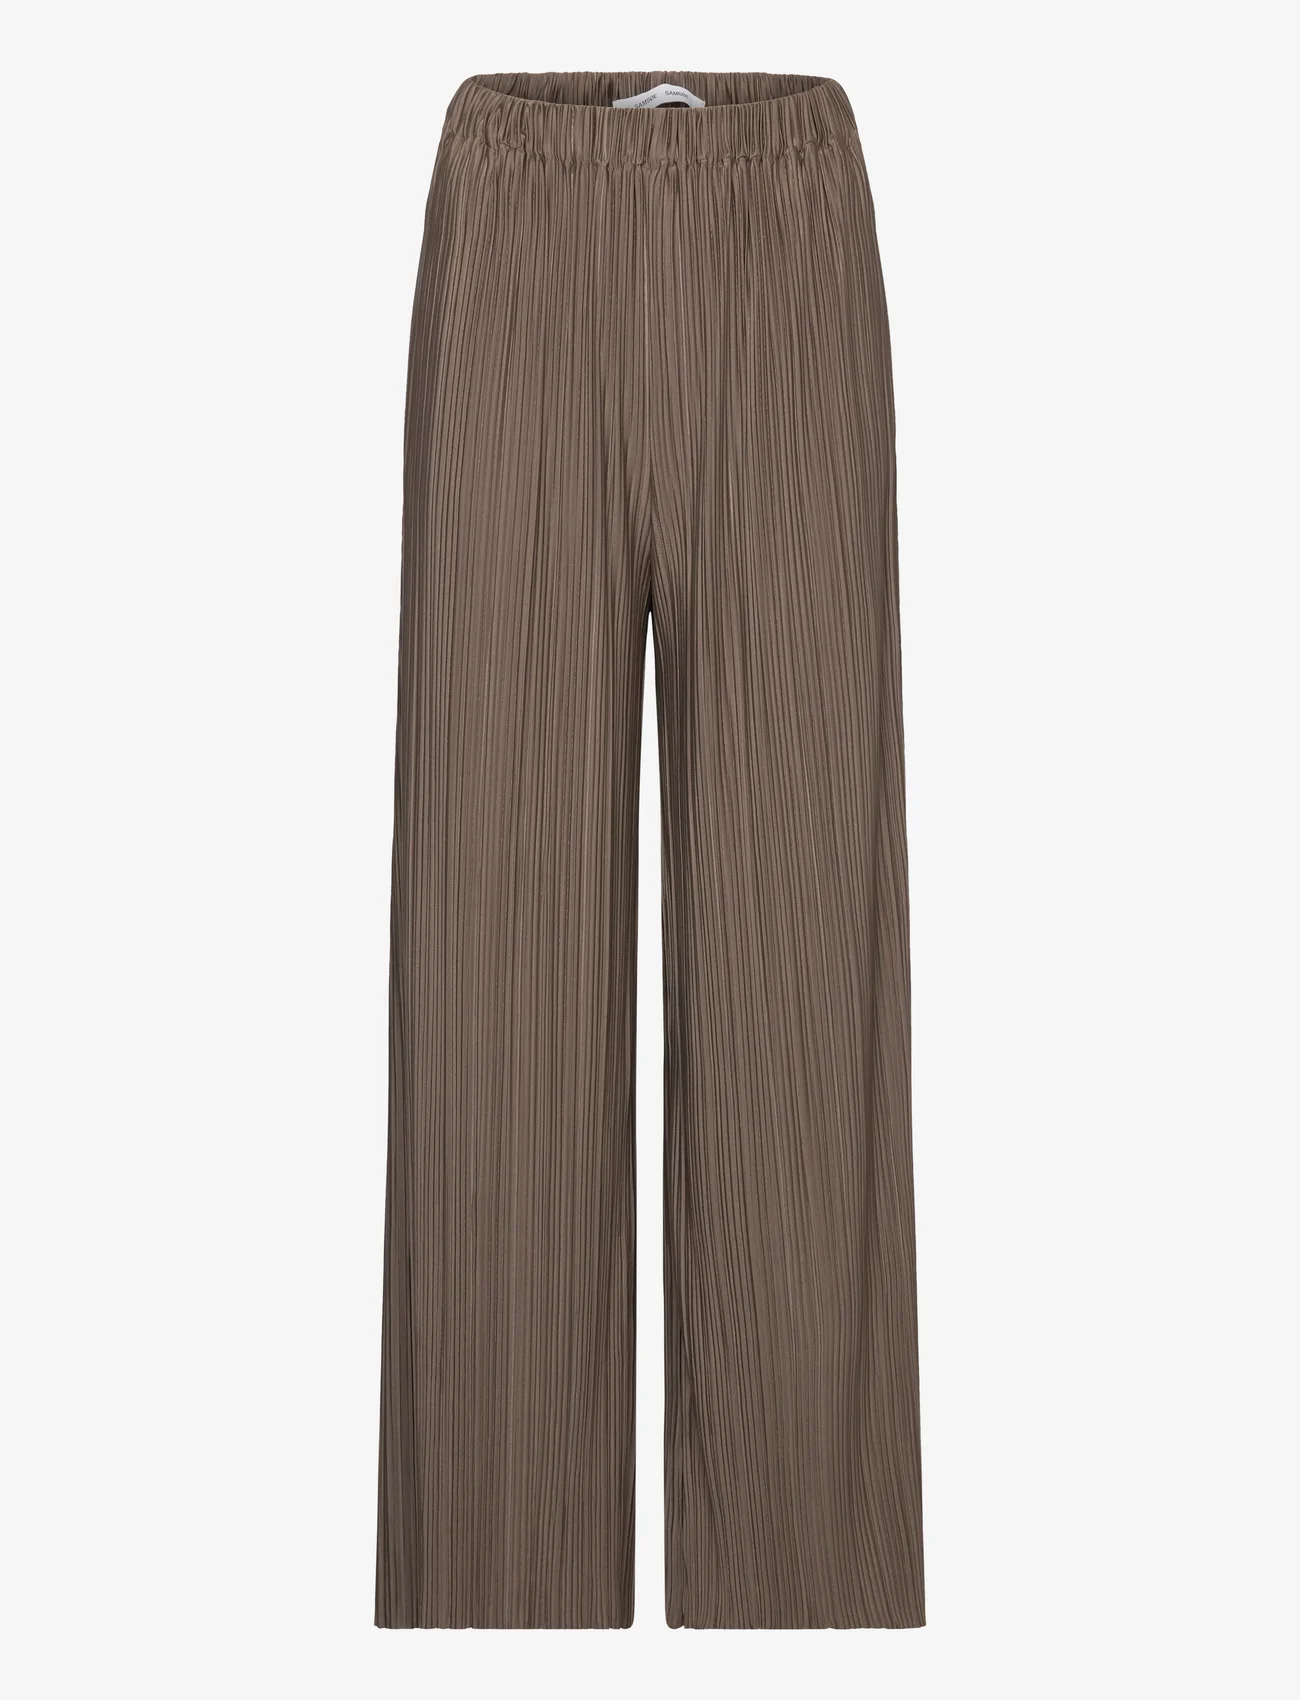 Samsøe Samsøe - Uma trousers 10167 - bukser med brede ben - major brown - 0